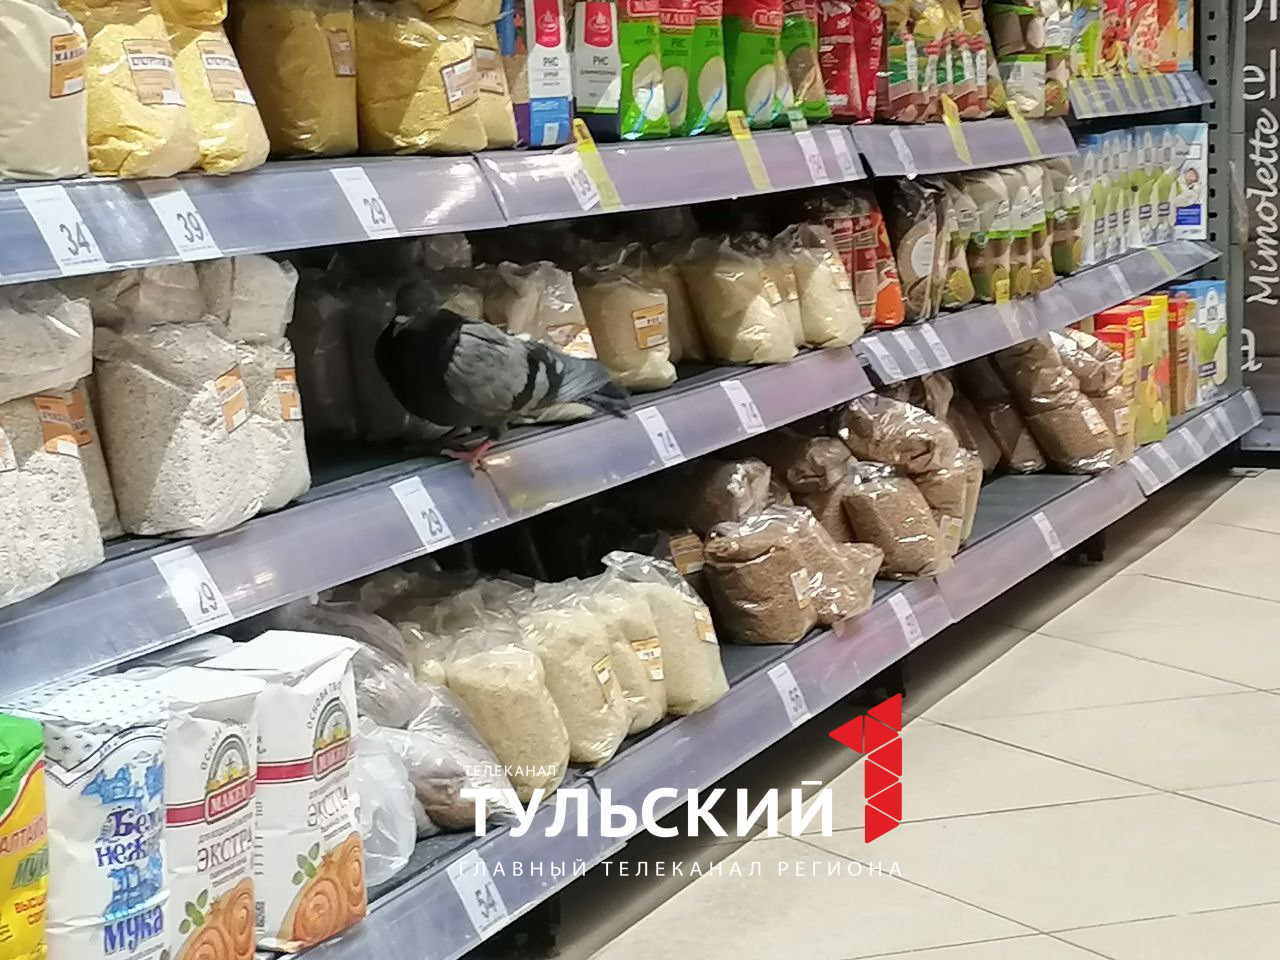 Самый популярный гриб на полках супермаркетов